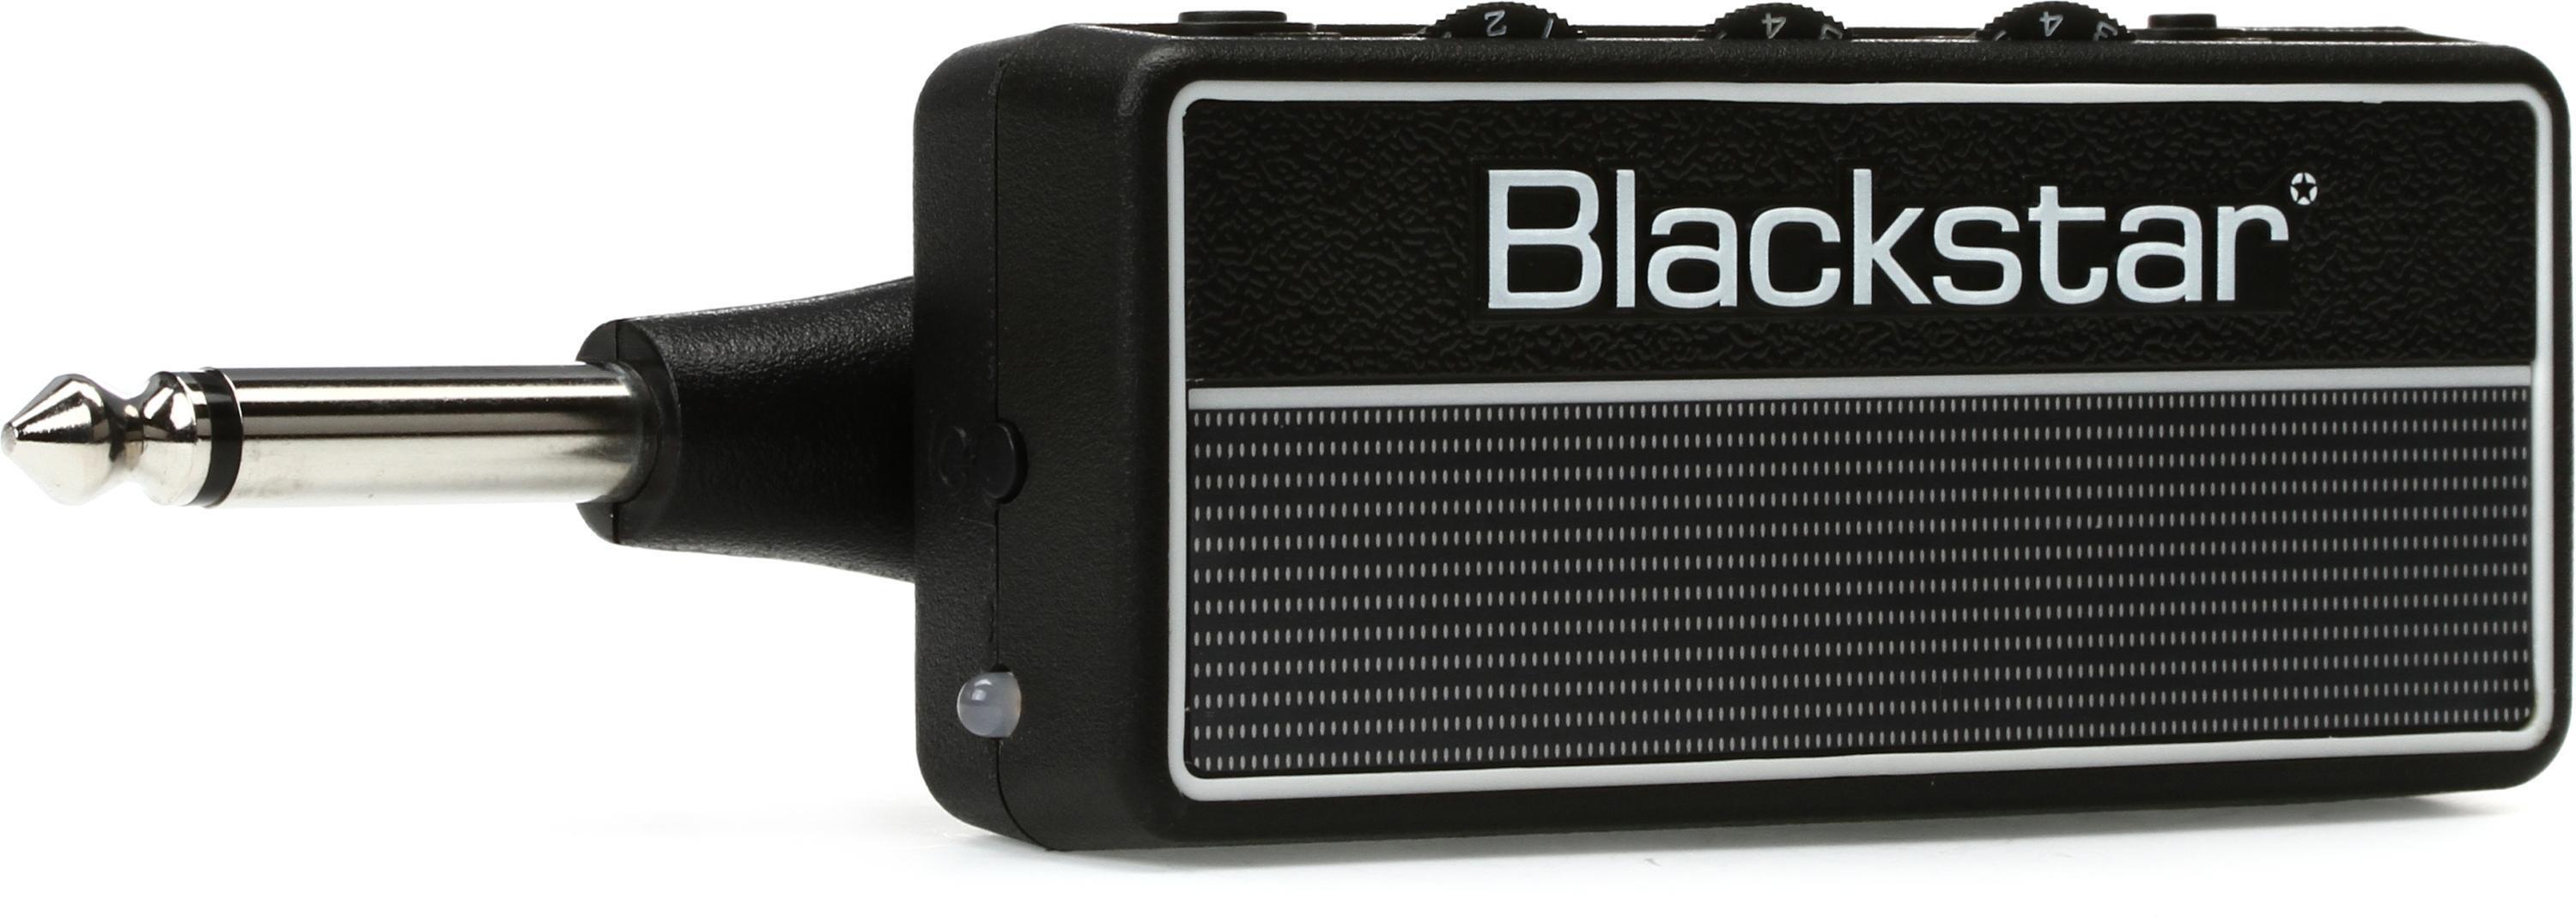 Bundled Item: Blackstar amPlug 2 FLY Headphone Guitar Amp